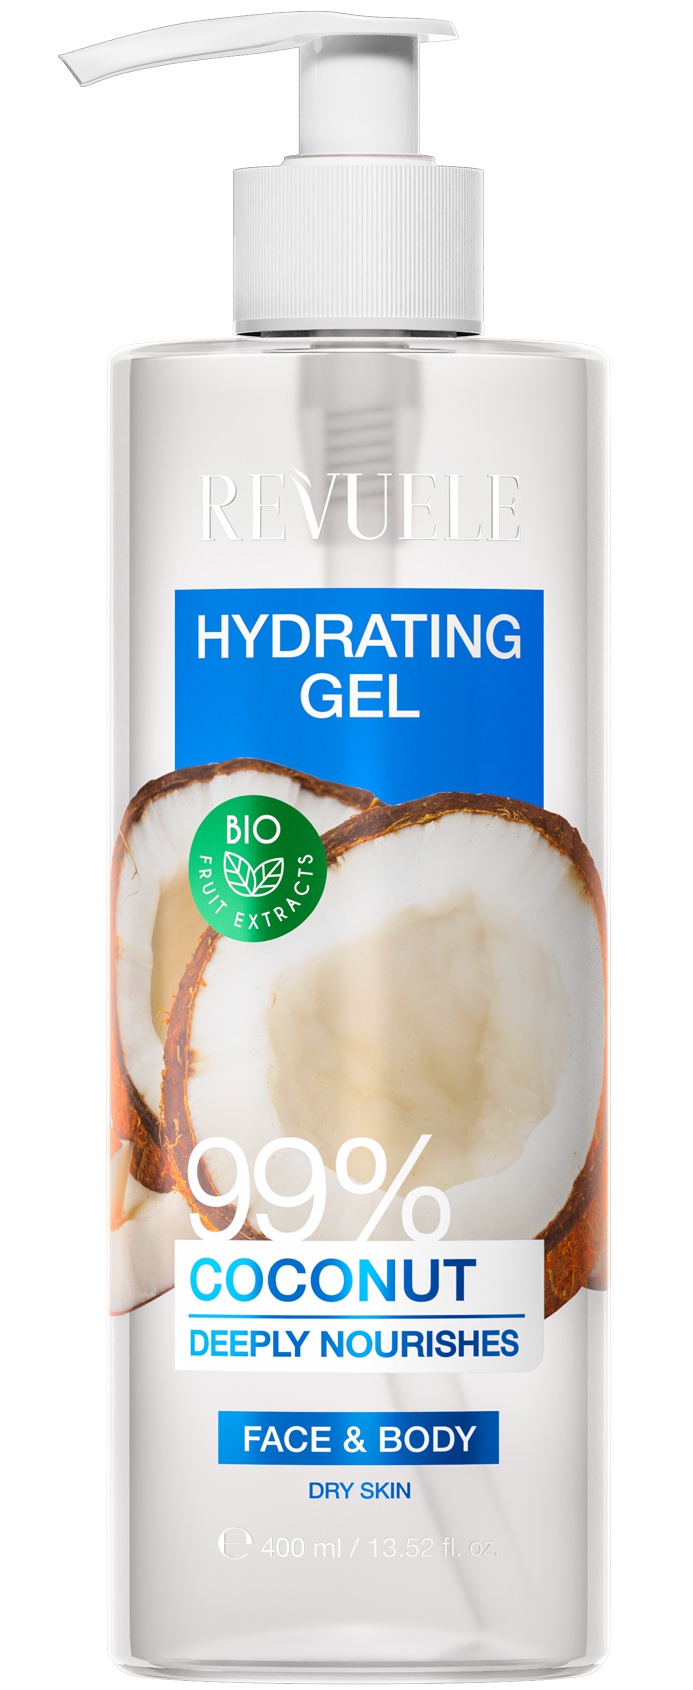 Revuele Hydrating Gel Coconut 99%